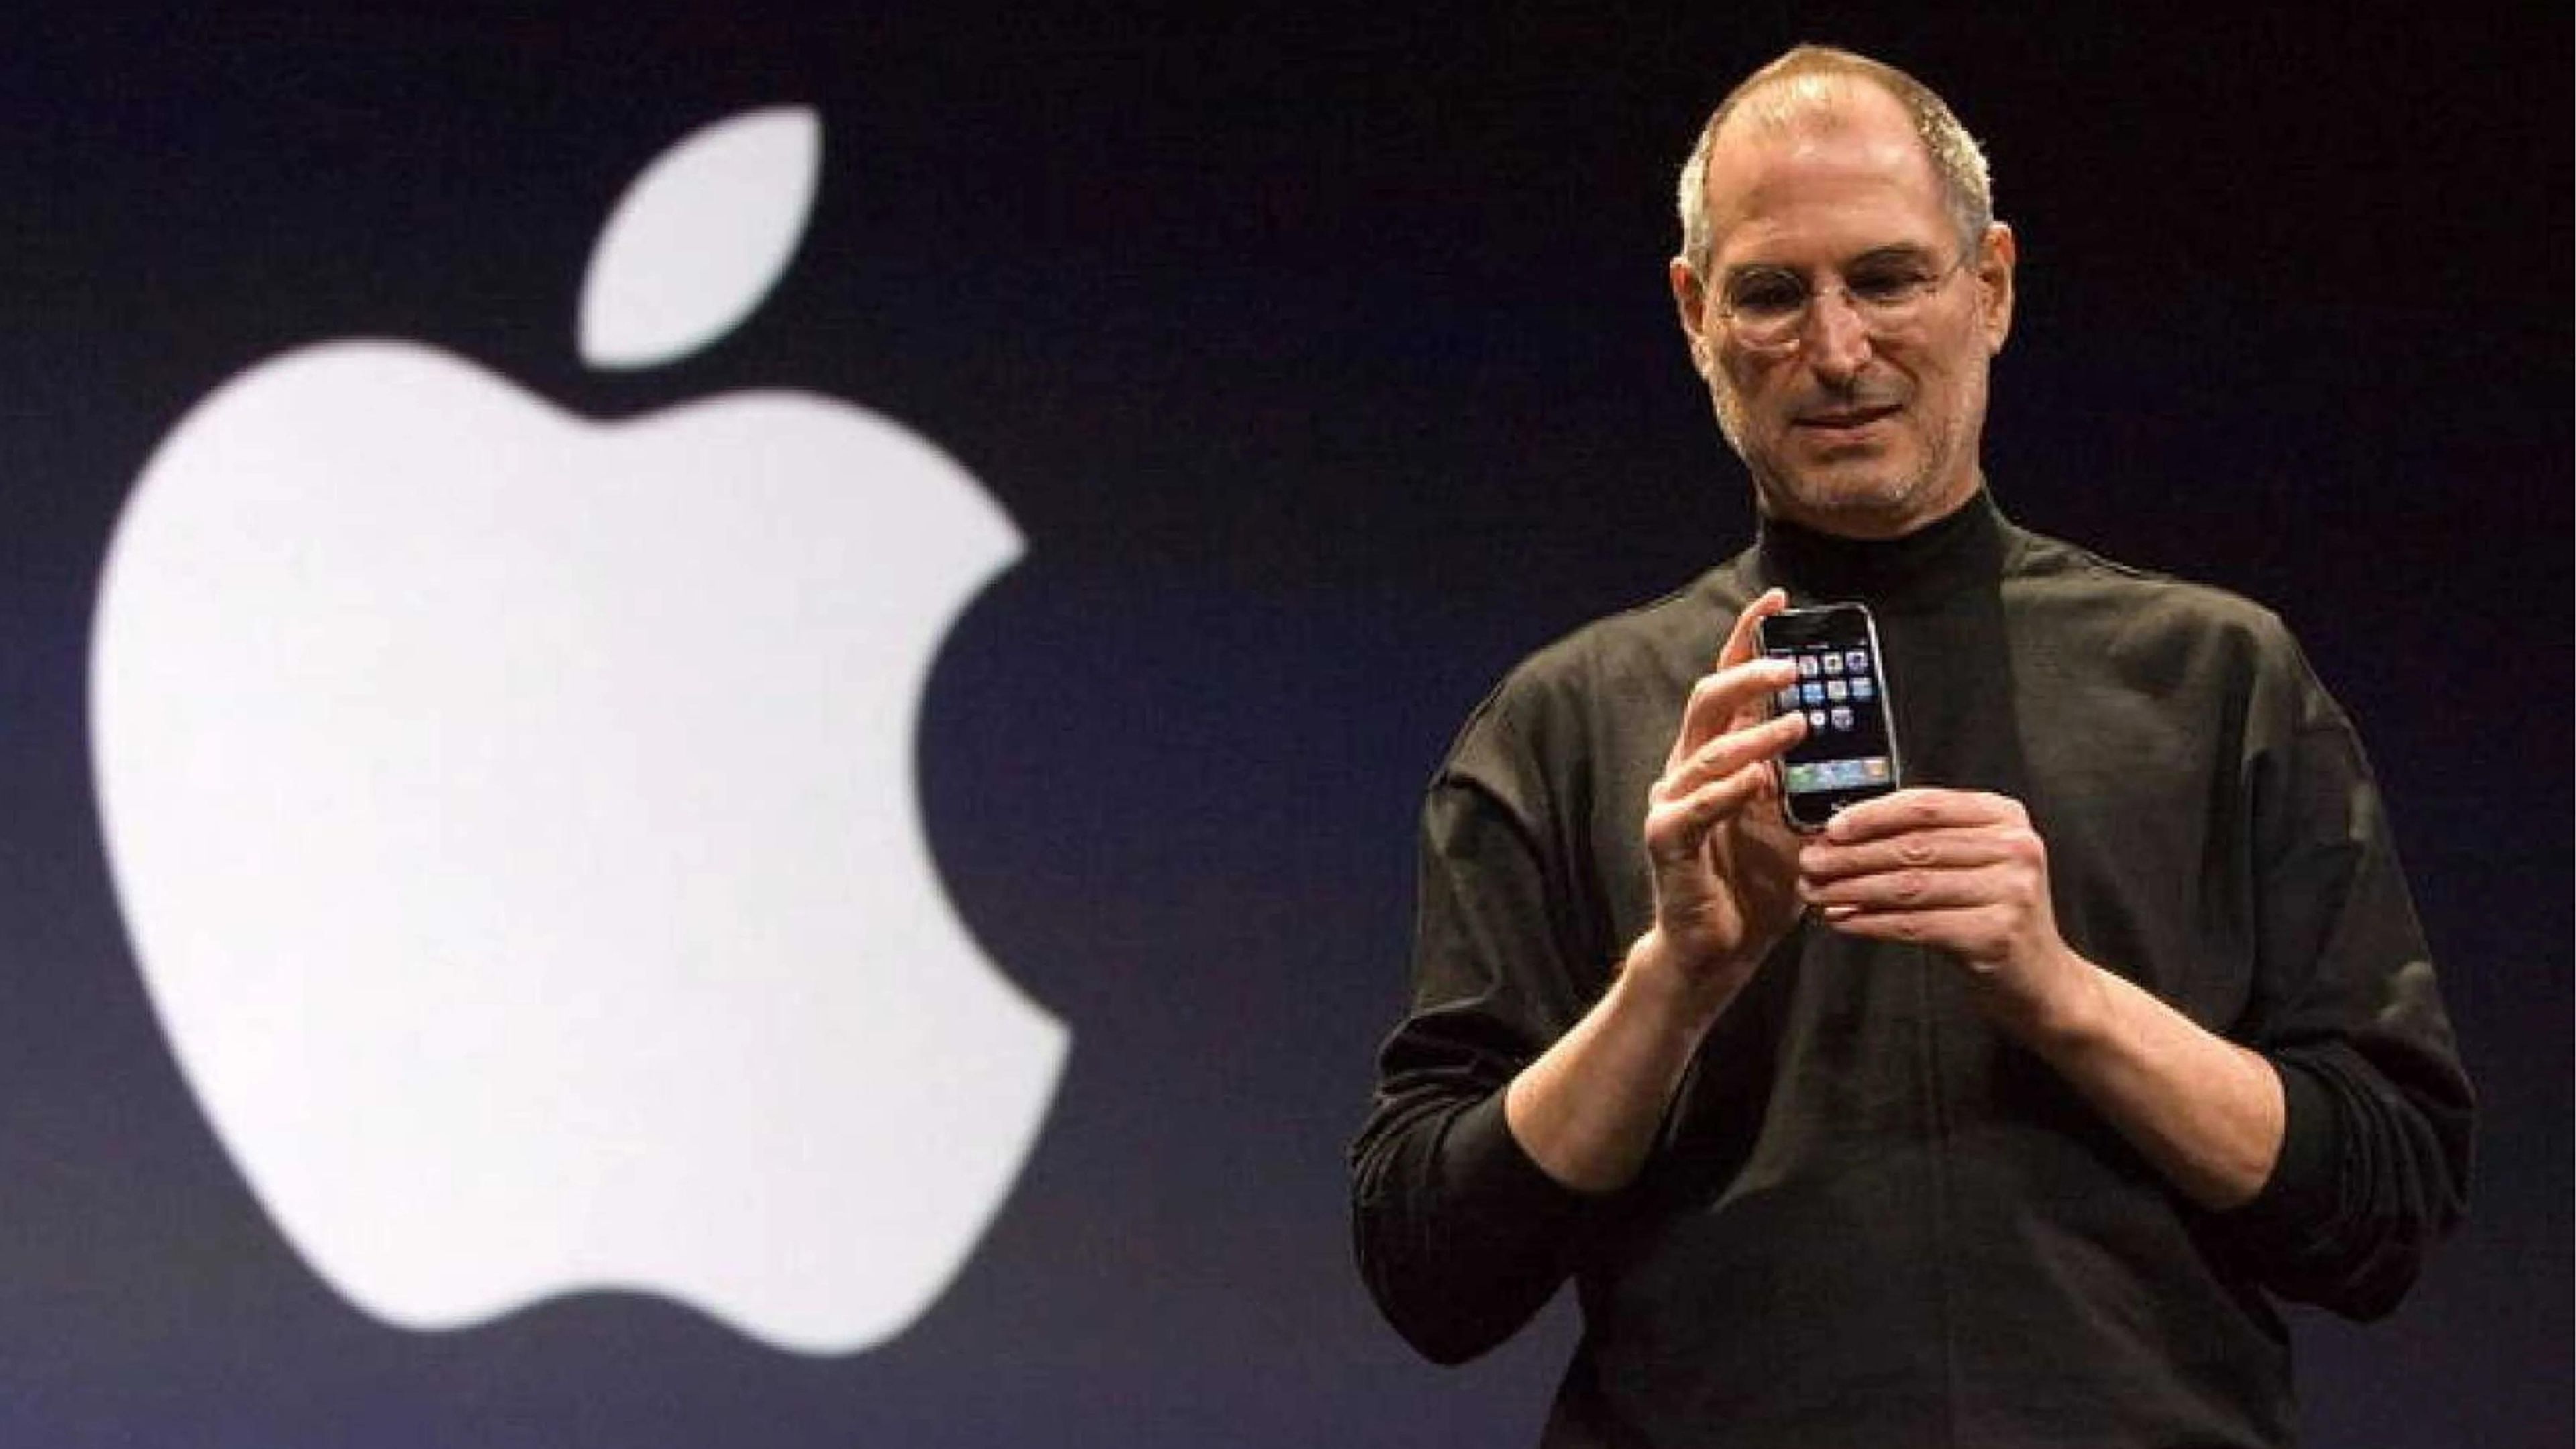 La sorprendente petición de Steve Jobs al presentar el iPhone que hubiera sido una humillación hoy en día